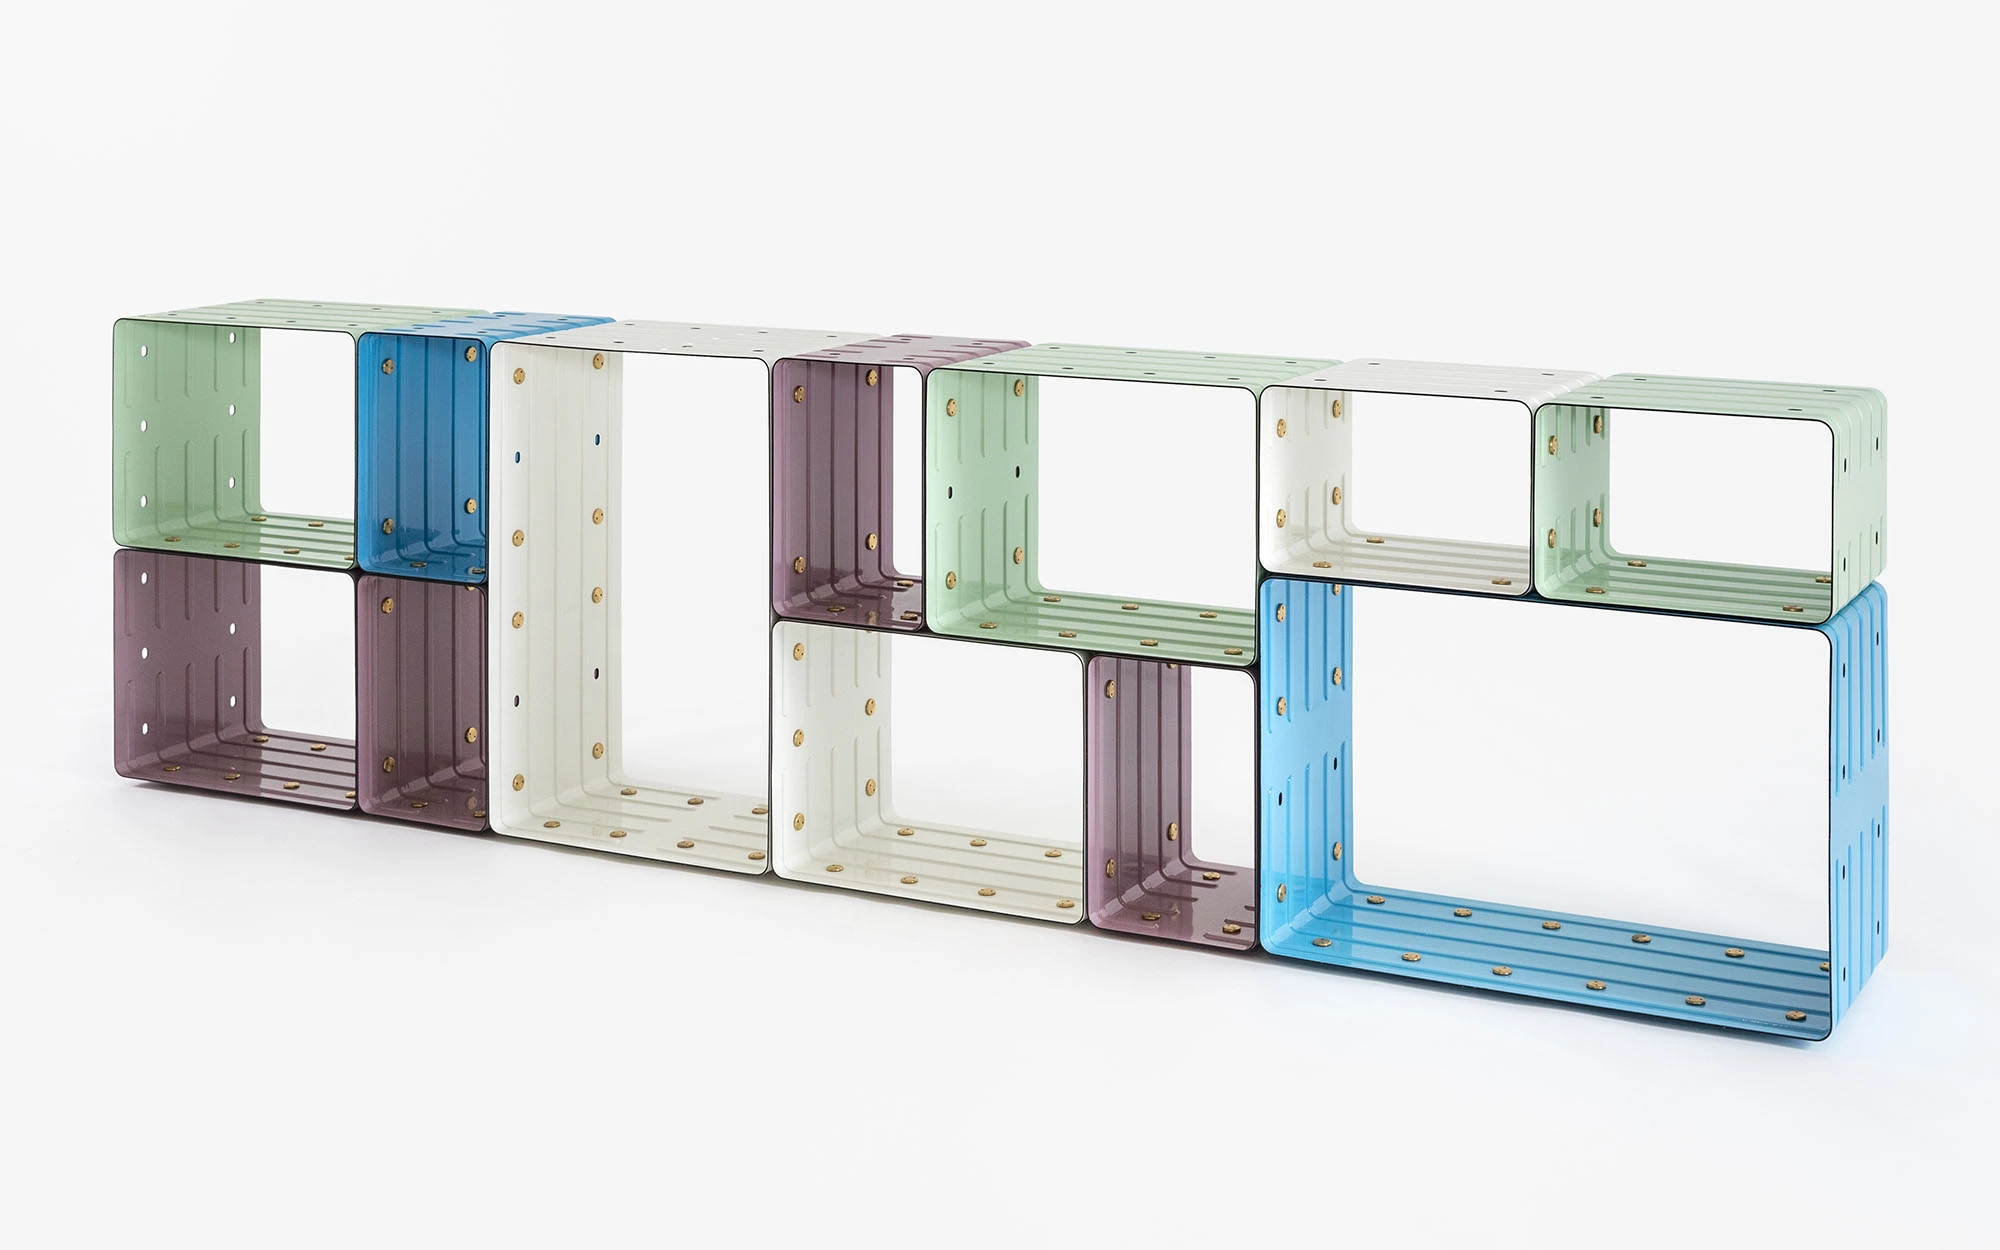 Quobus 2,4,6 multicolored - Marc Newson - Bookshelf - Galerie kreo